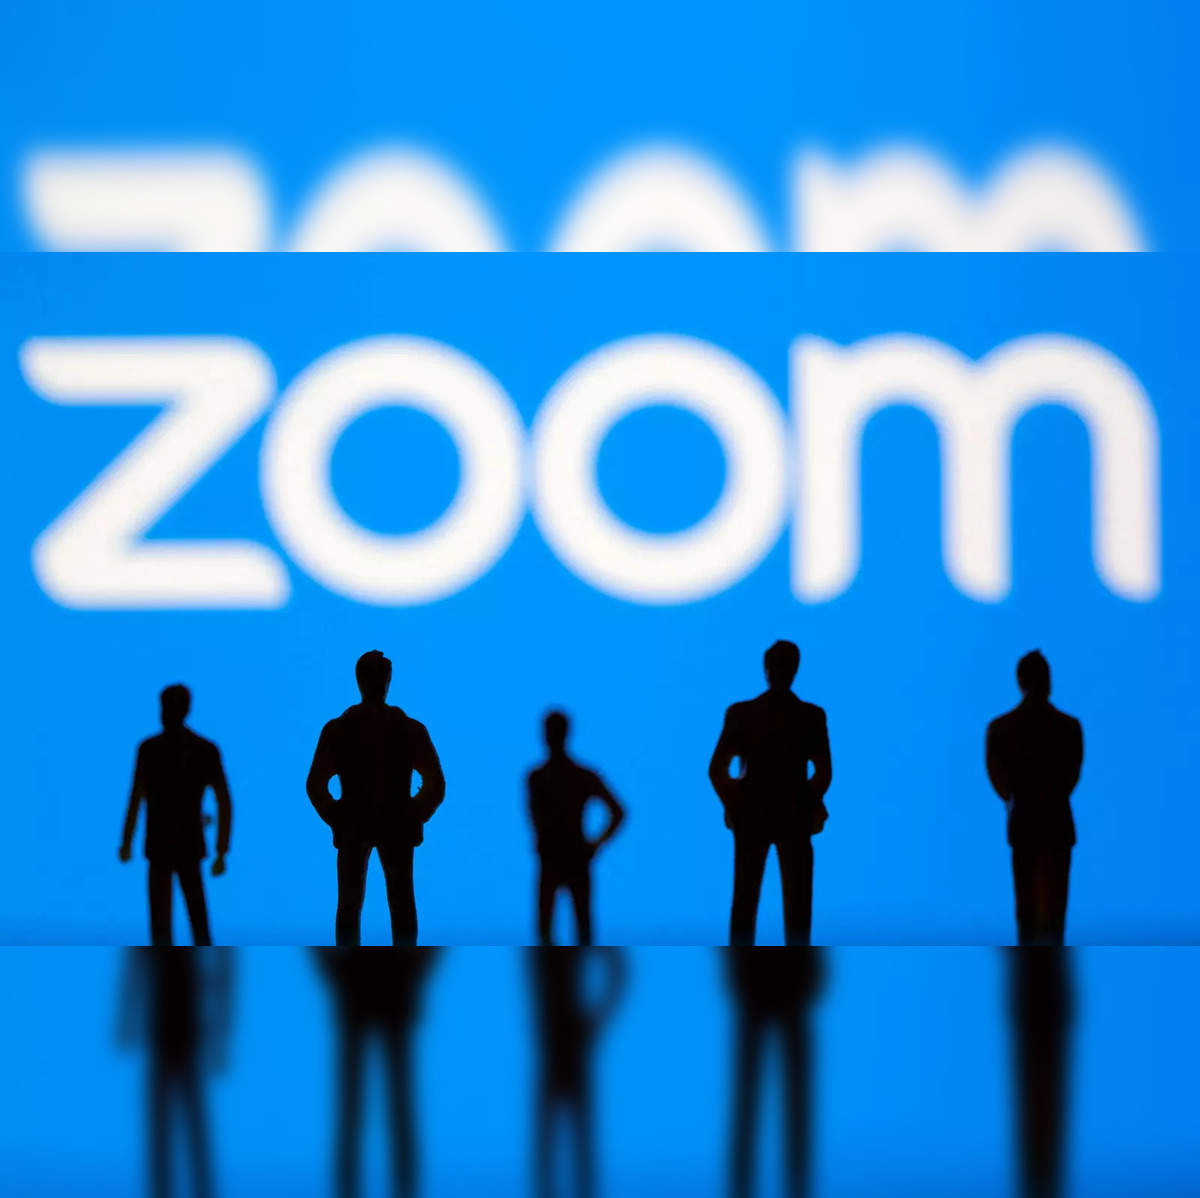 Zoom Vector Logo - Download Free SVG Icon | Worldvectorlogo